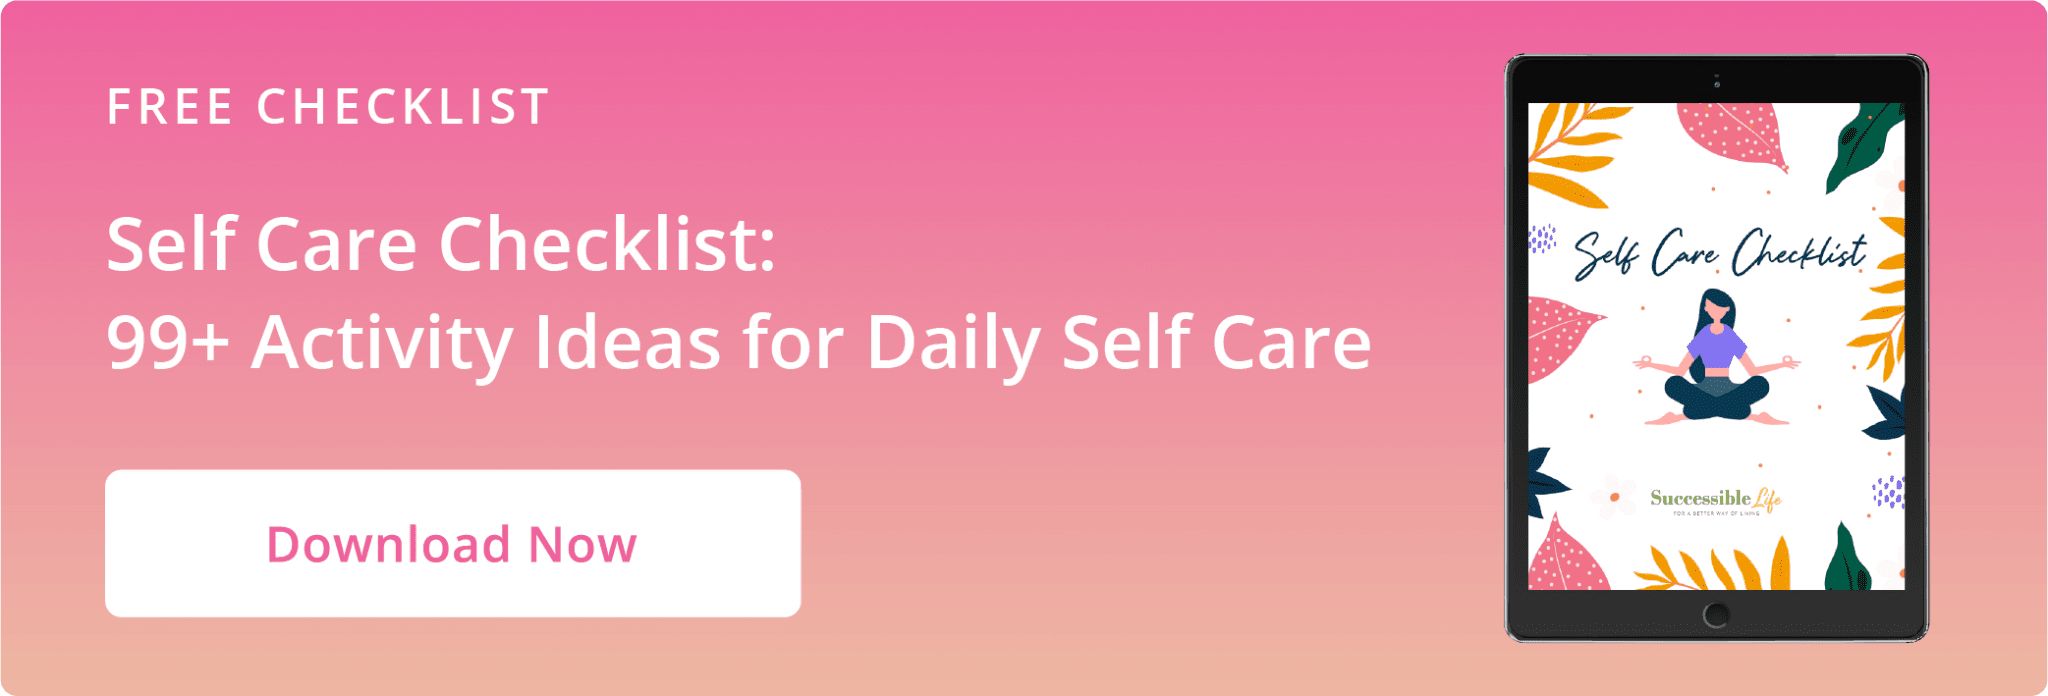 Artile CTA Graphic - Self Care Checklist